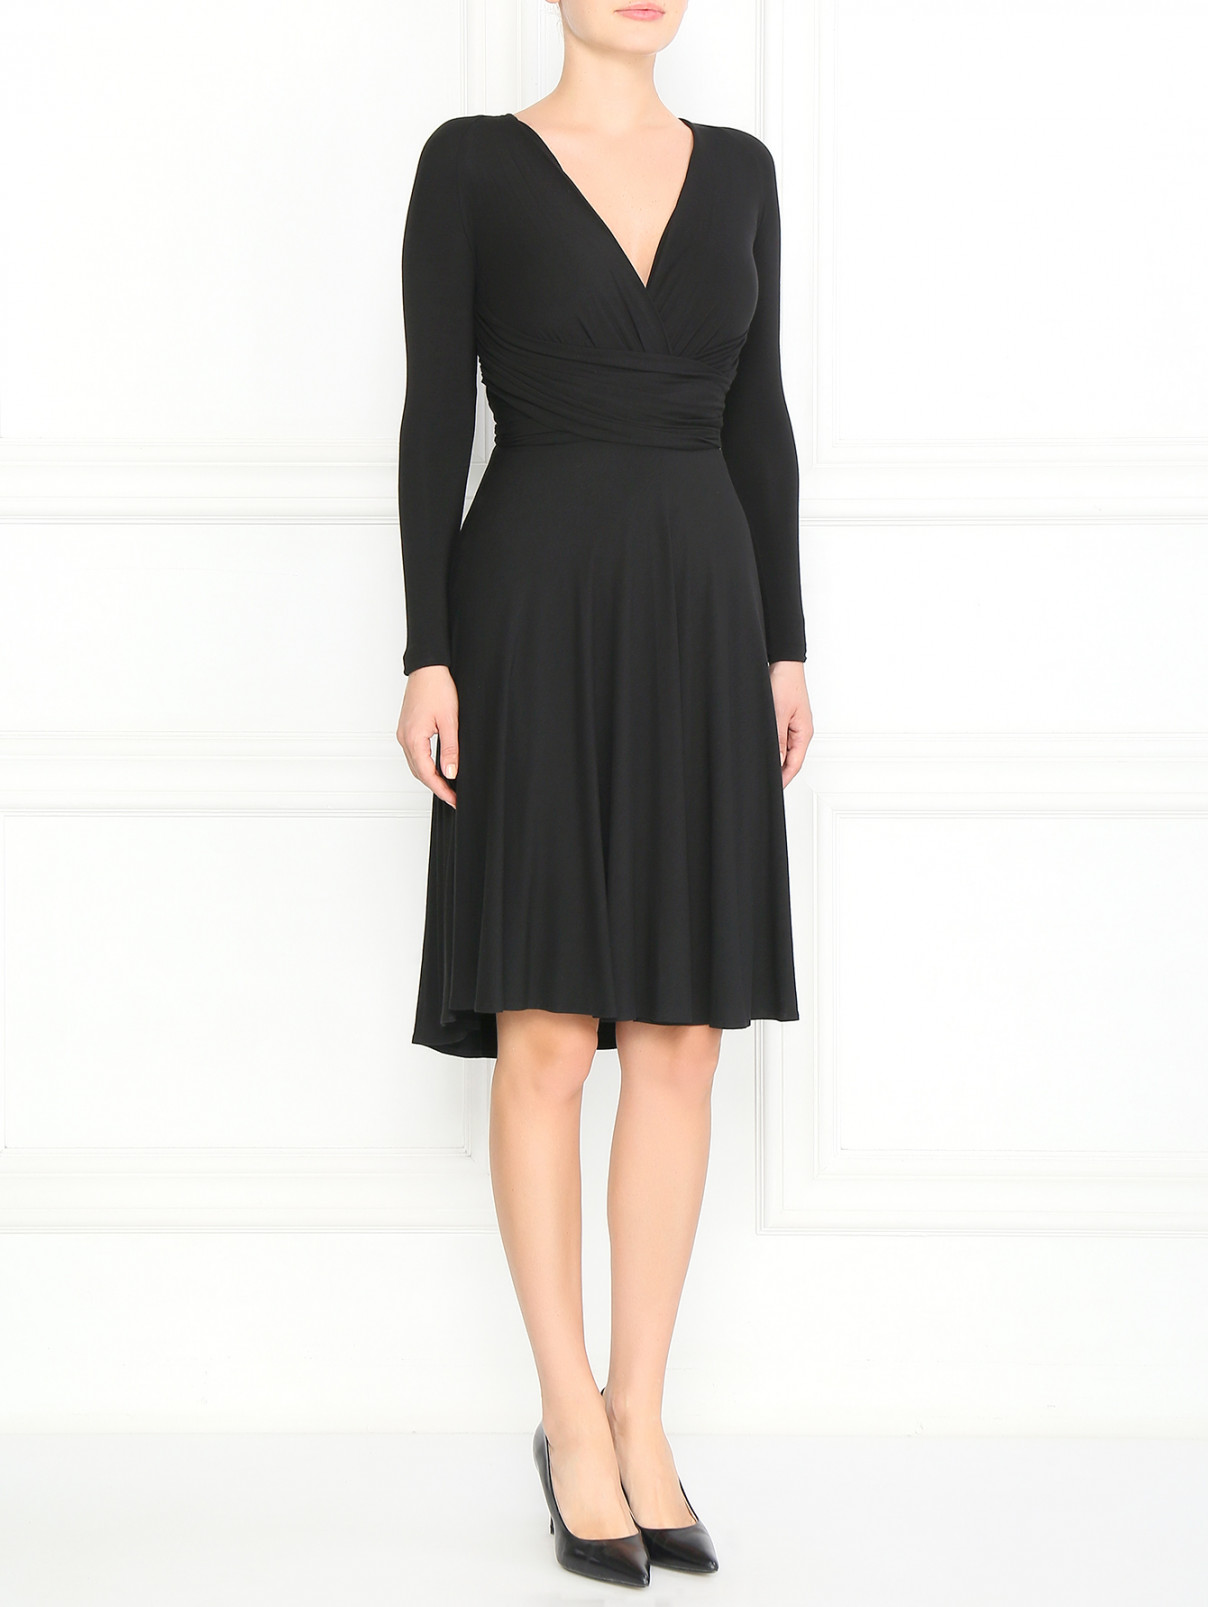 Платье c драпировкой и вставкой из кружева La Perla  –  Модель Общий вид  – Цвет:  Черный